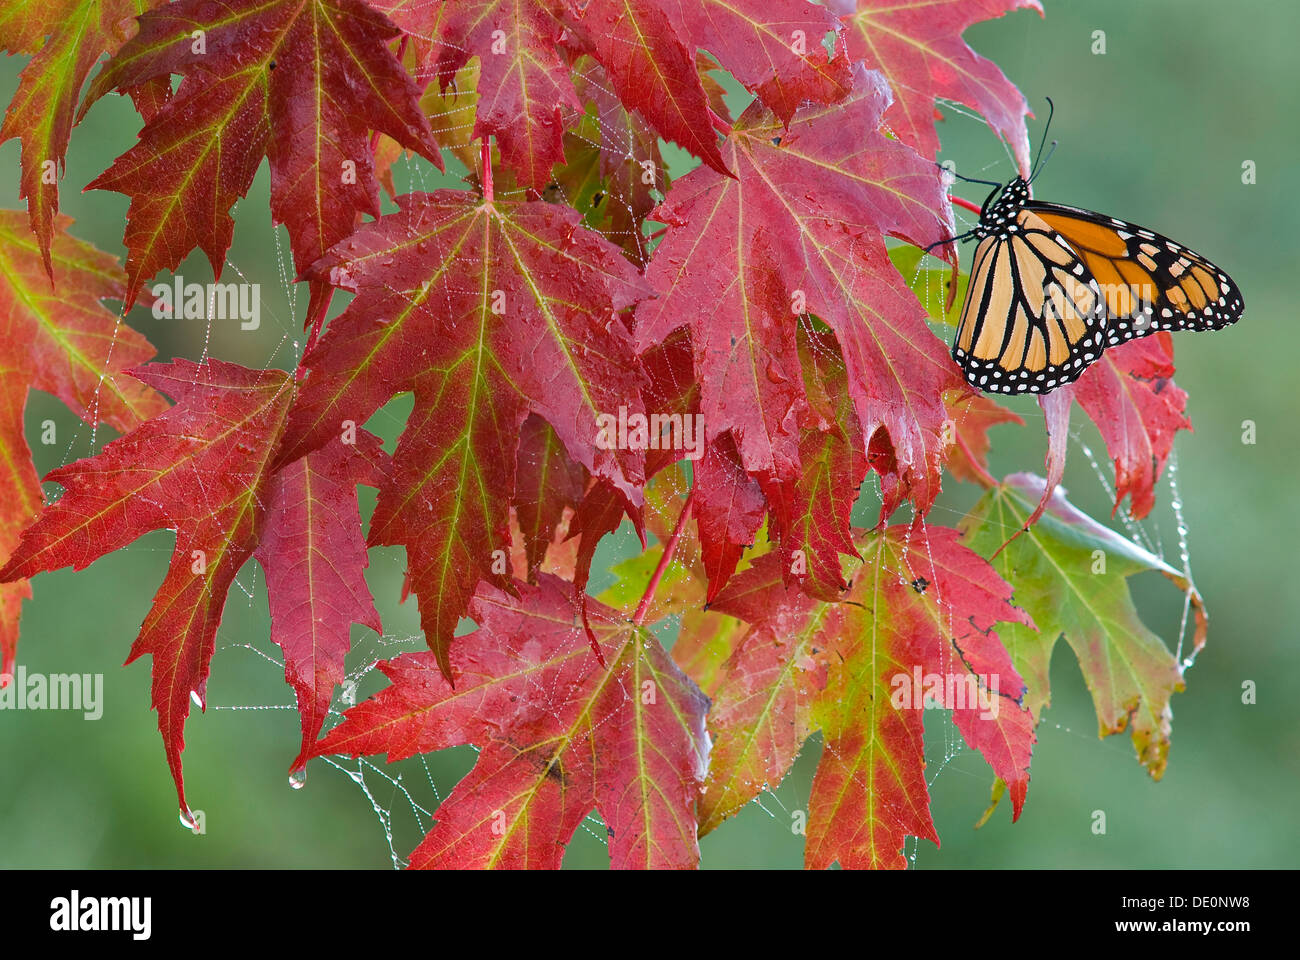 Monarque papillon danaus plexippus reposant sur argent feuilles d'érable Ace saccharinum automne E USA Banque D'Images